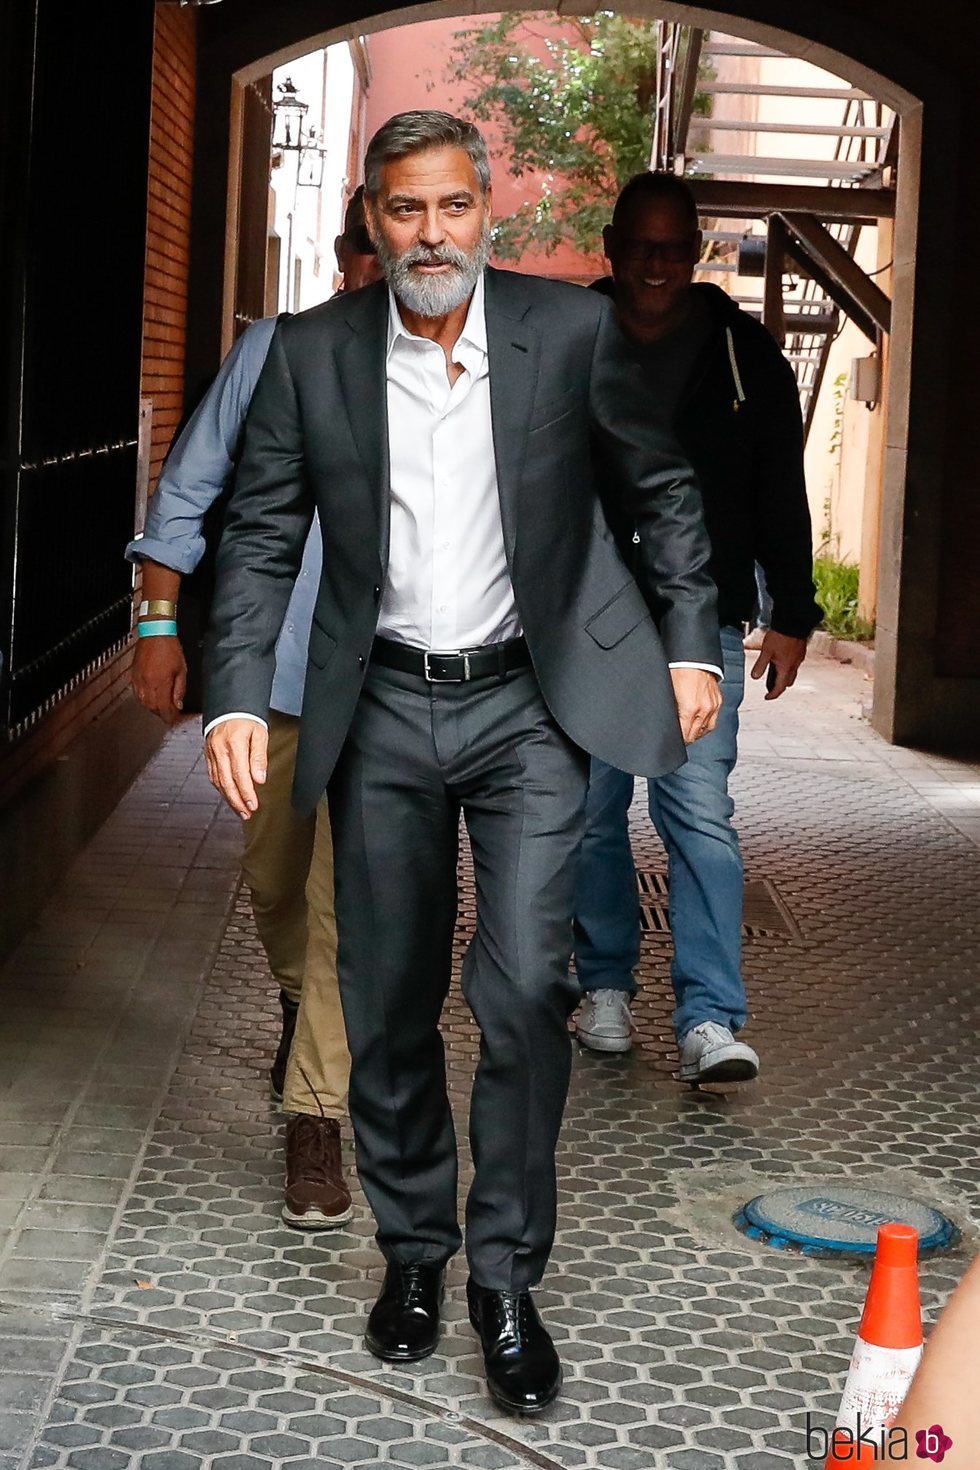 George Clooney por las calles de Madrid